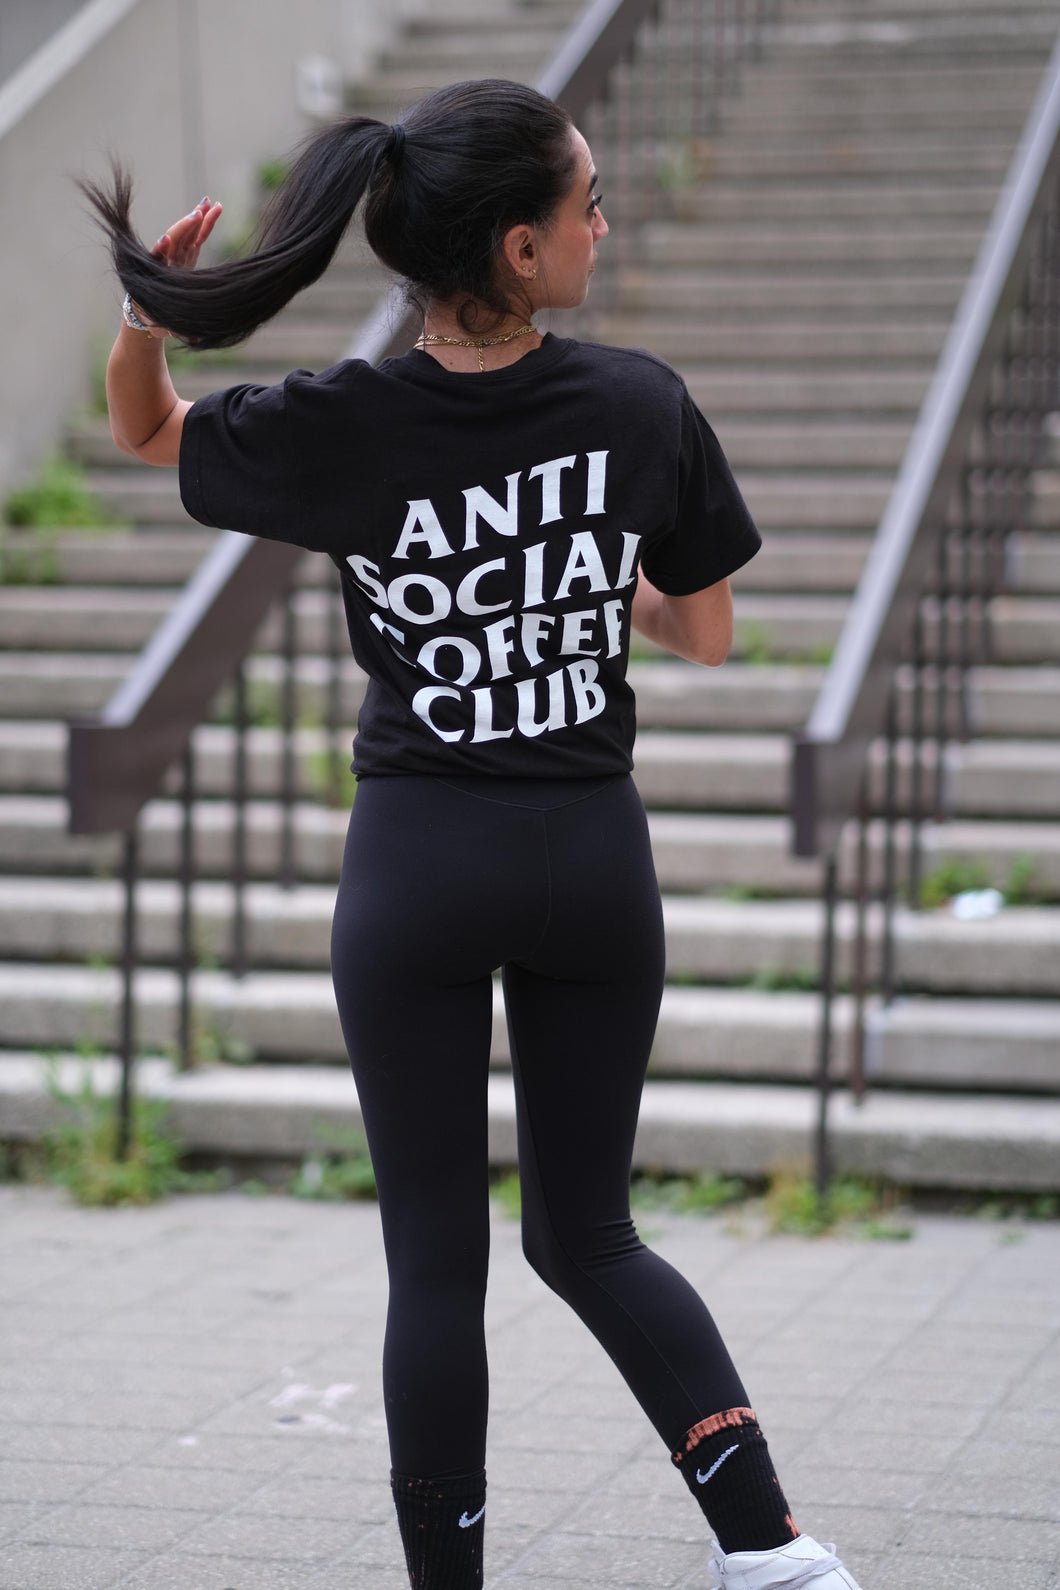 Anti Social Coffee Club Tshirt